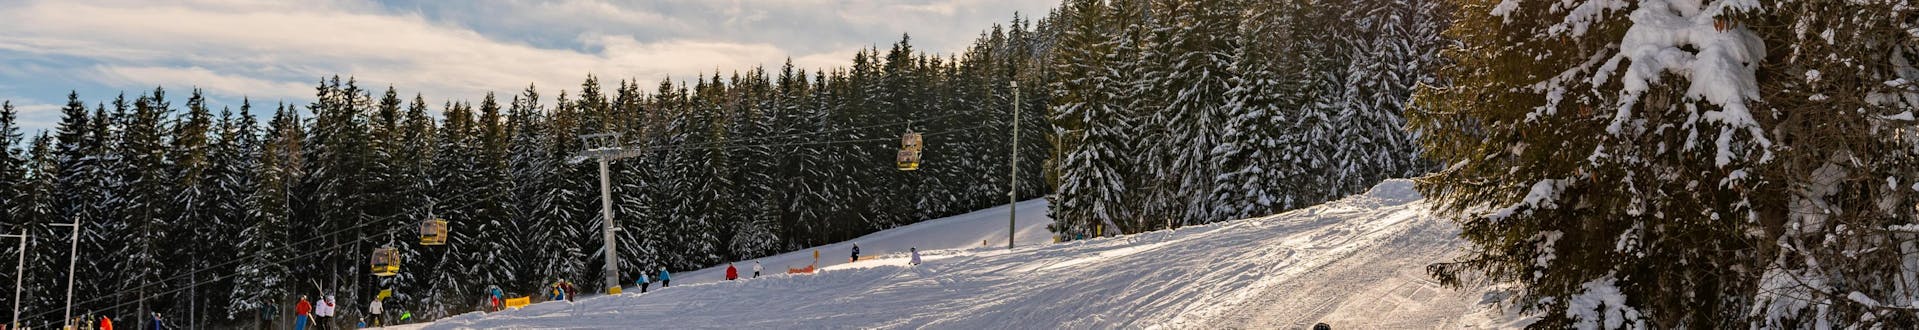 Blick auf die Pisten und einen Sessellift im Skigebiet Schladming - Planai, wo die örtlichen Skischulen ihre Skikurse anbieten.